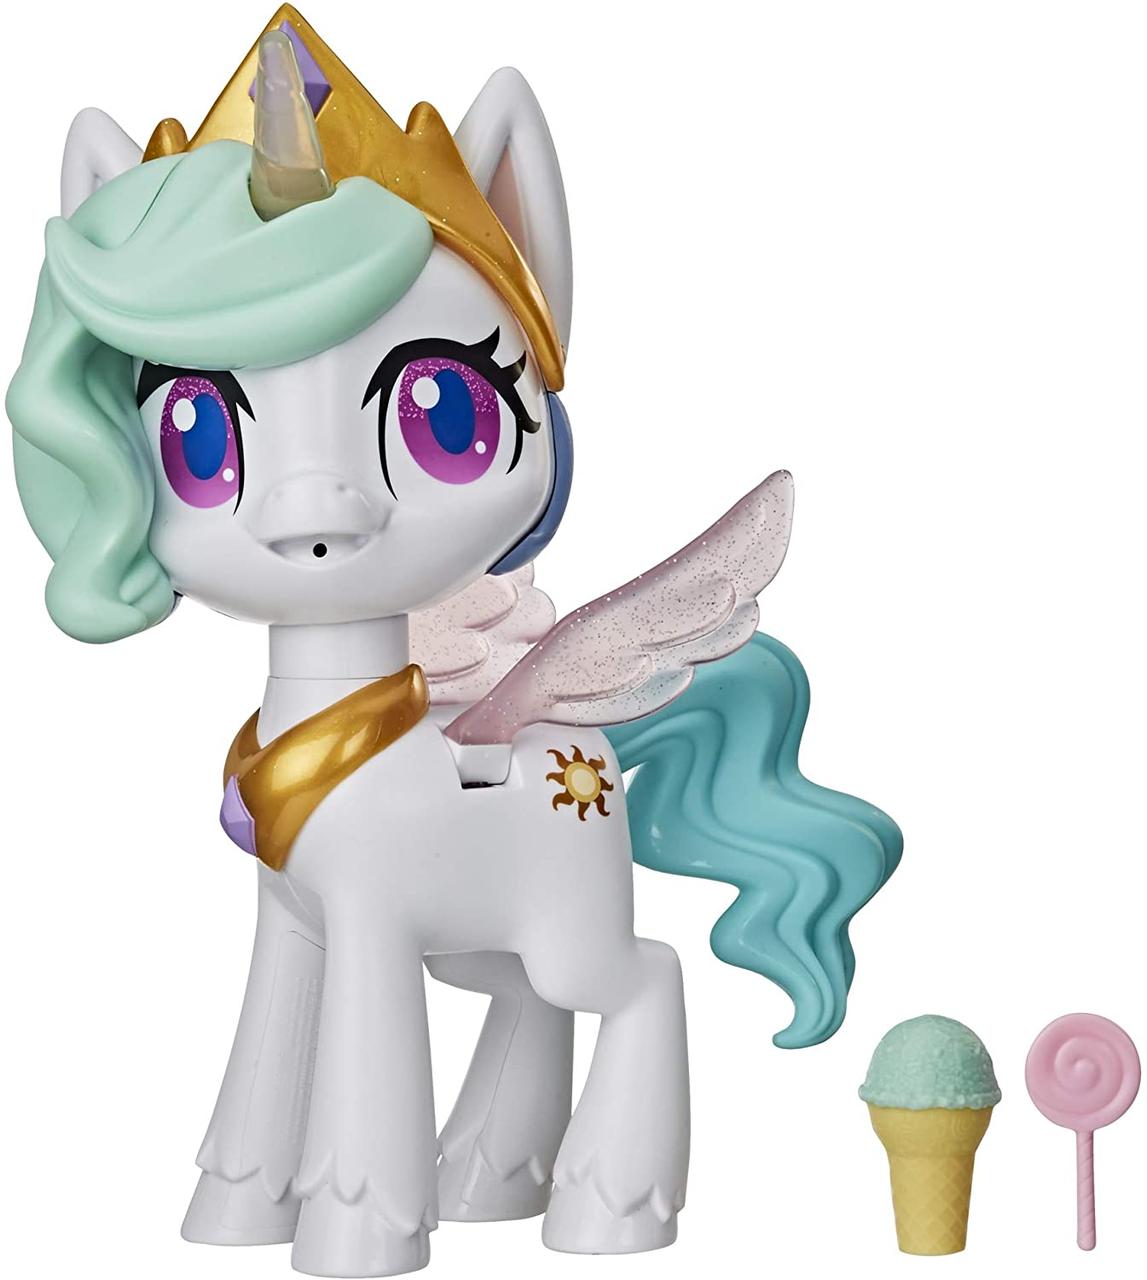 Інтерактивна поні Принцеса Селесія повітряний поцілунок My Little Pony Magical Kiss Unicorn Princess Celestia, фото 1